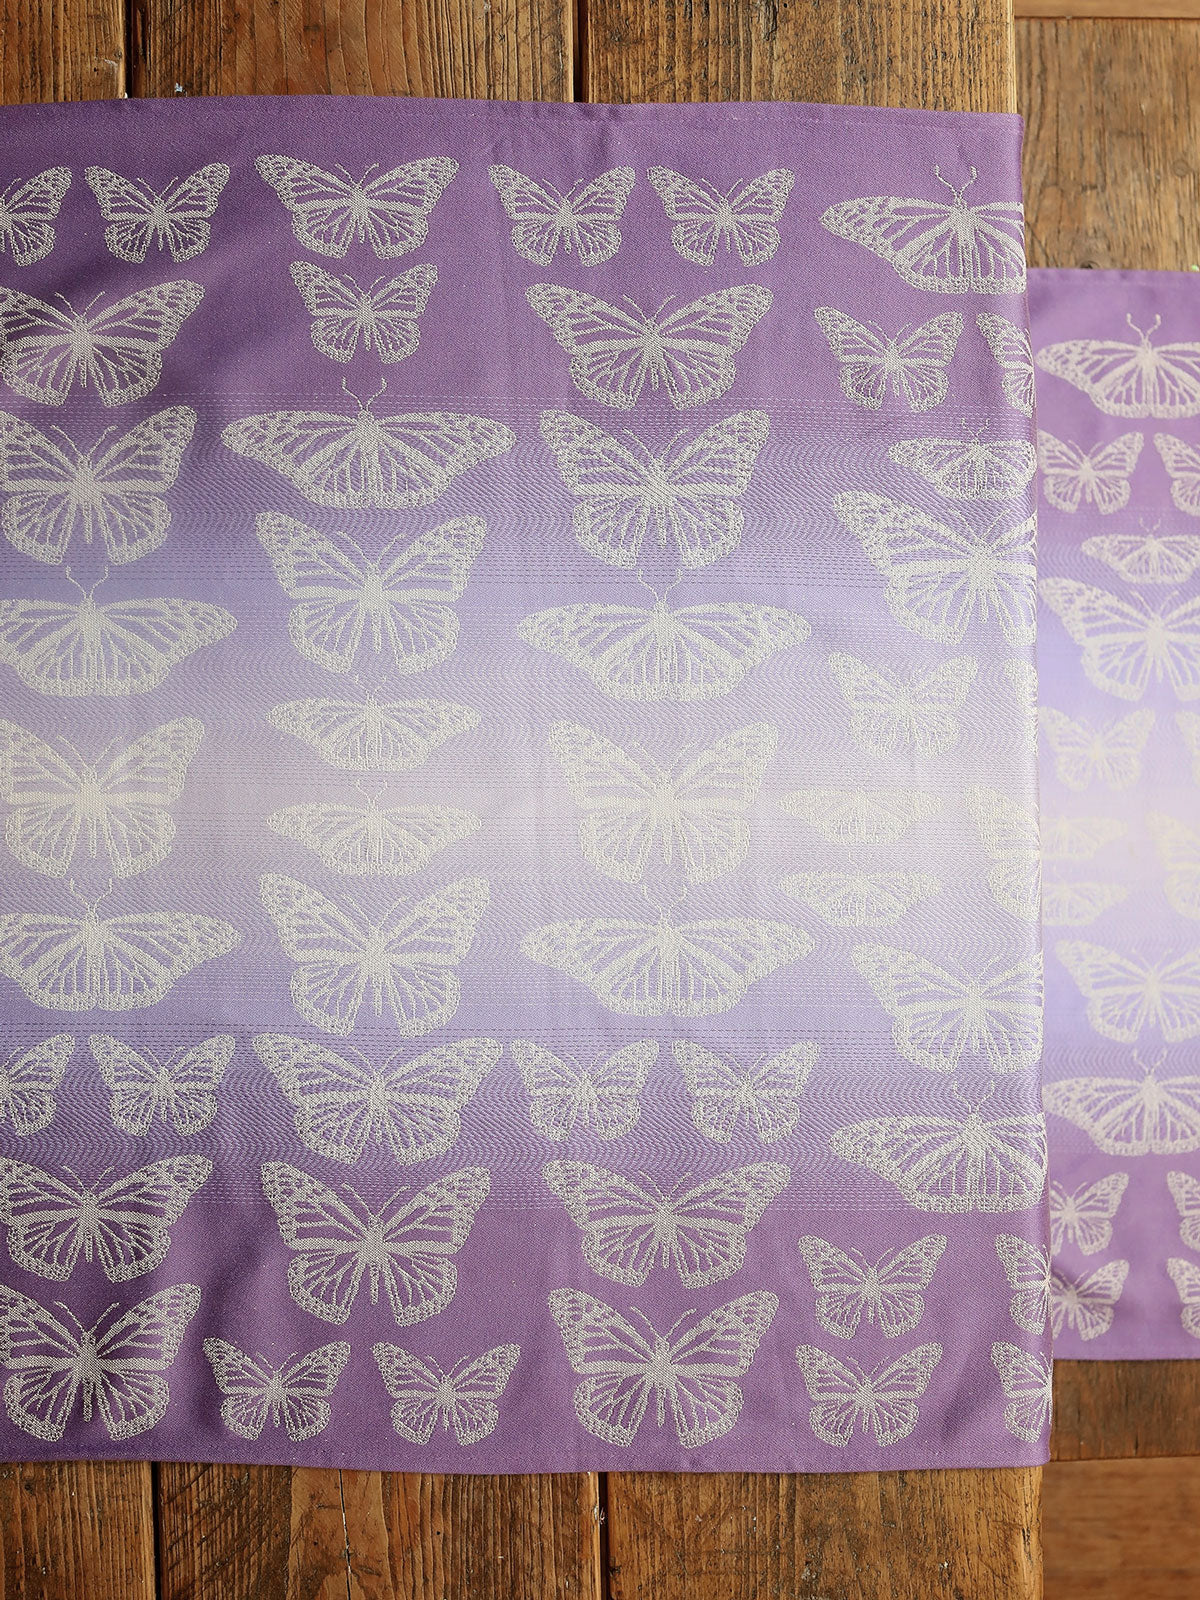 Papillons Mariposa Spares